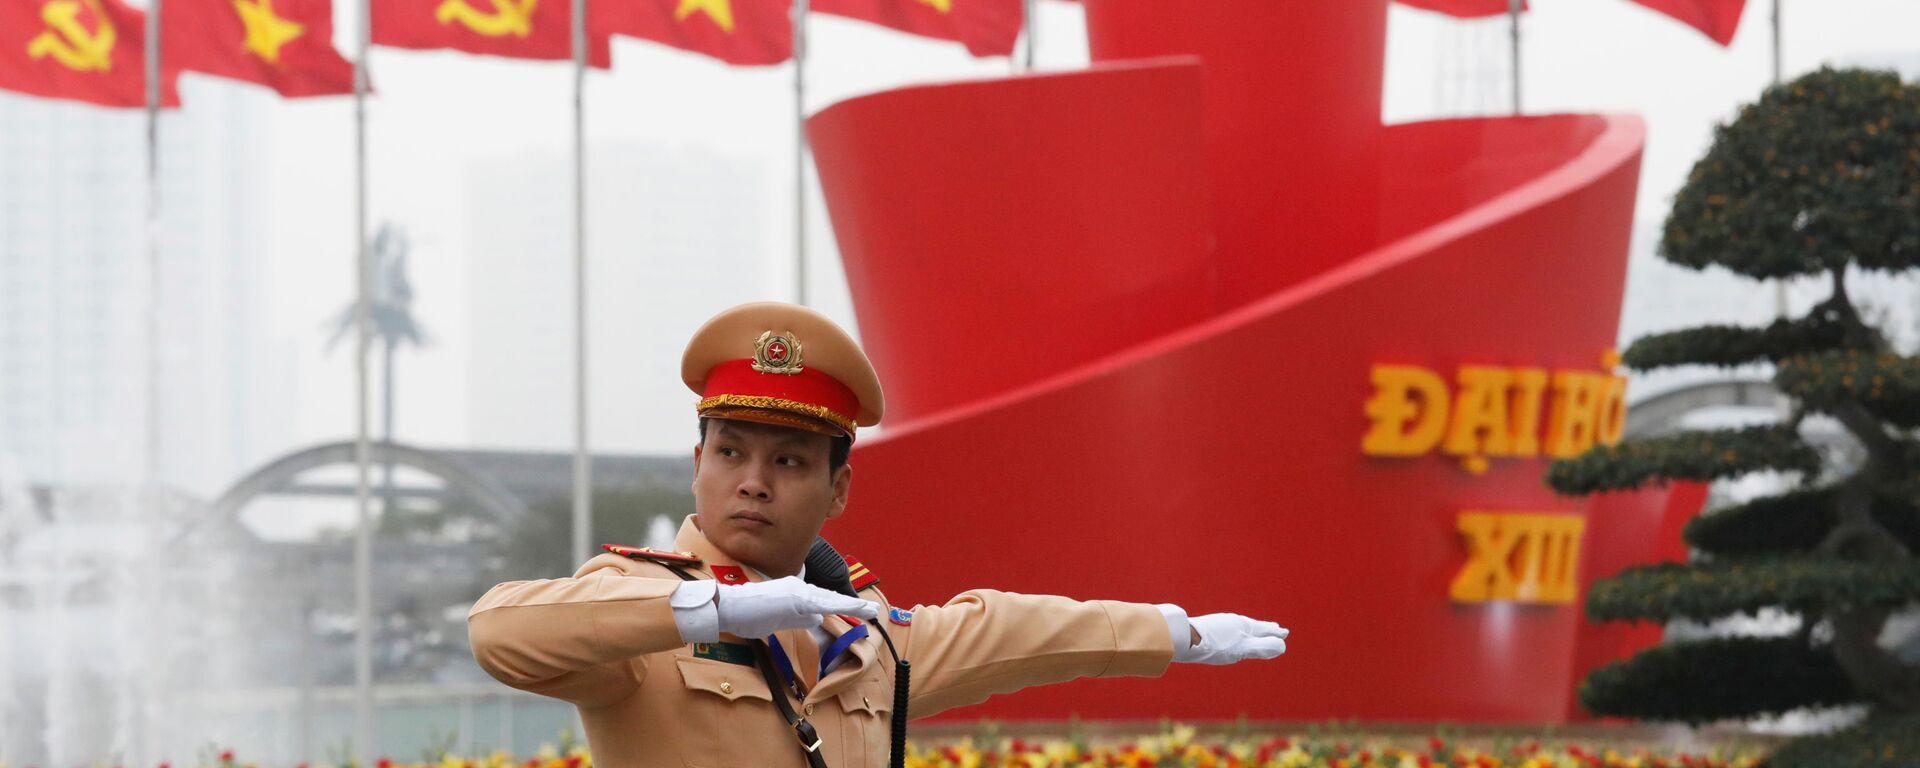 Cảnh sát điều khiển giao thông gần địa điểm tiến hành Đại hội lần thứ XIII của Đảng Cộng sản Việt Nam tại Hà Nội - Sputnik Việt Nam, 1920, 26.01.2021